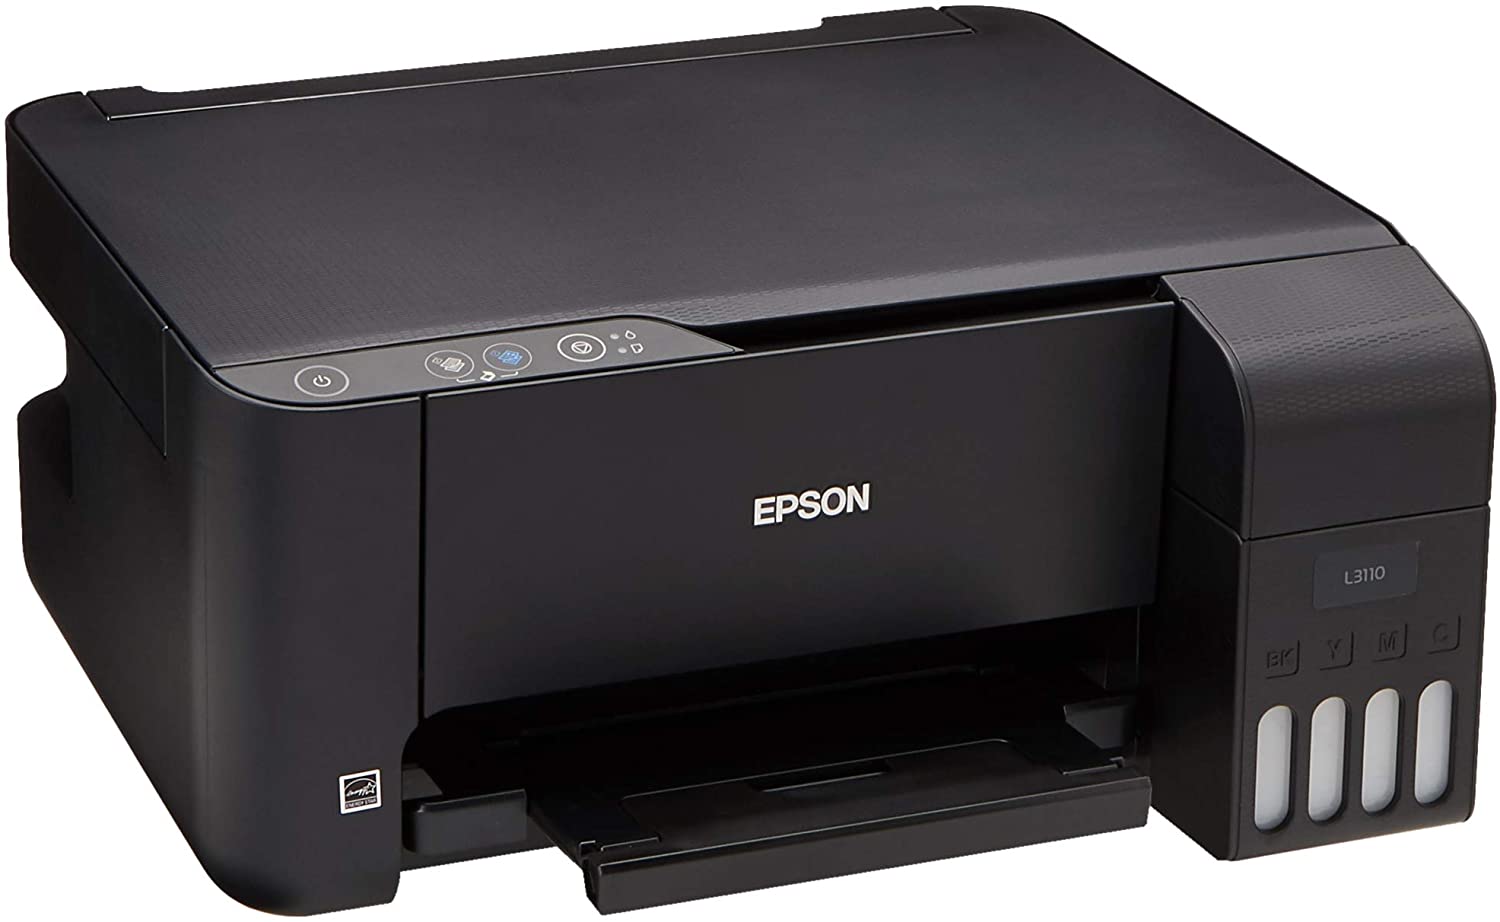 Epson l5190. Принтер Epson l3110. Принтер Эпсон 3110. Принтер Epson 3110 струйный. Принтер Epson l3151.